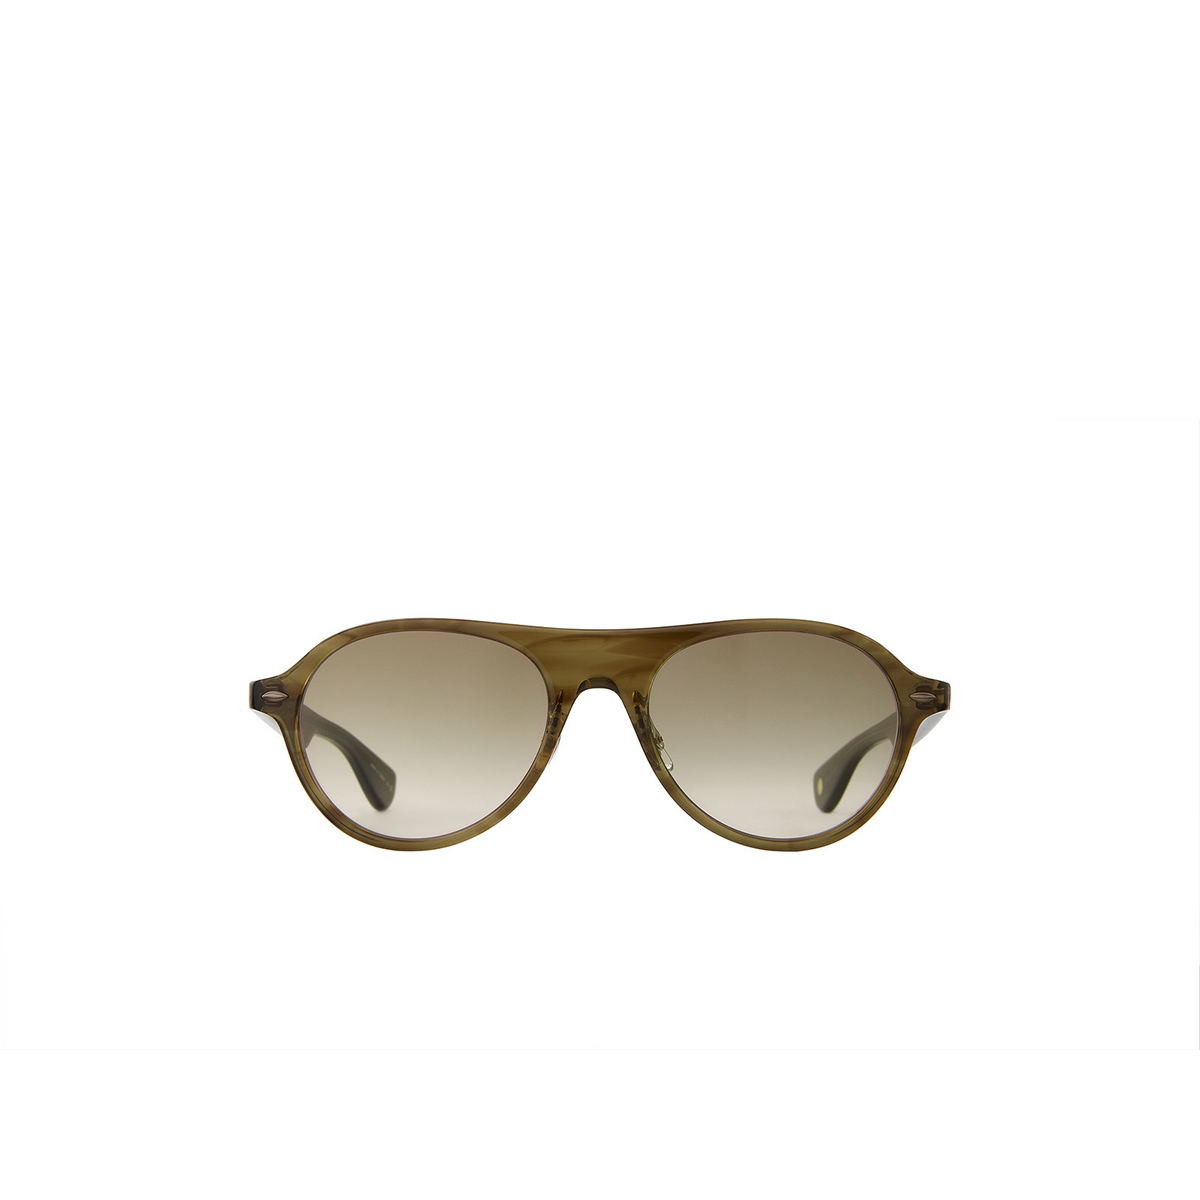 Garrett Leight LADY ECKHART Sunglasses OT/OG Olive Tortoise - front view